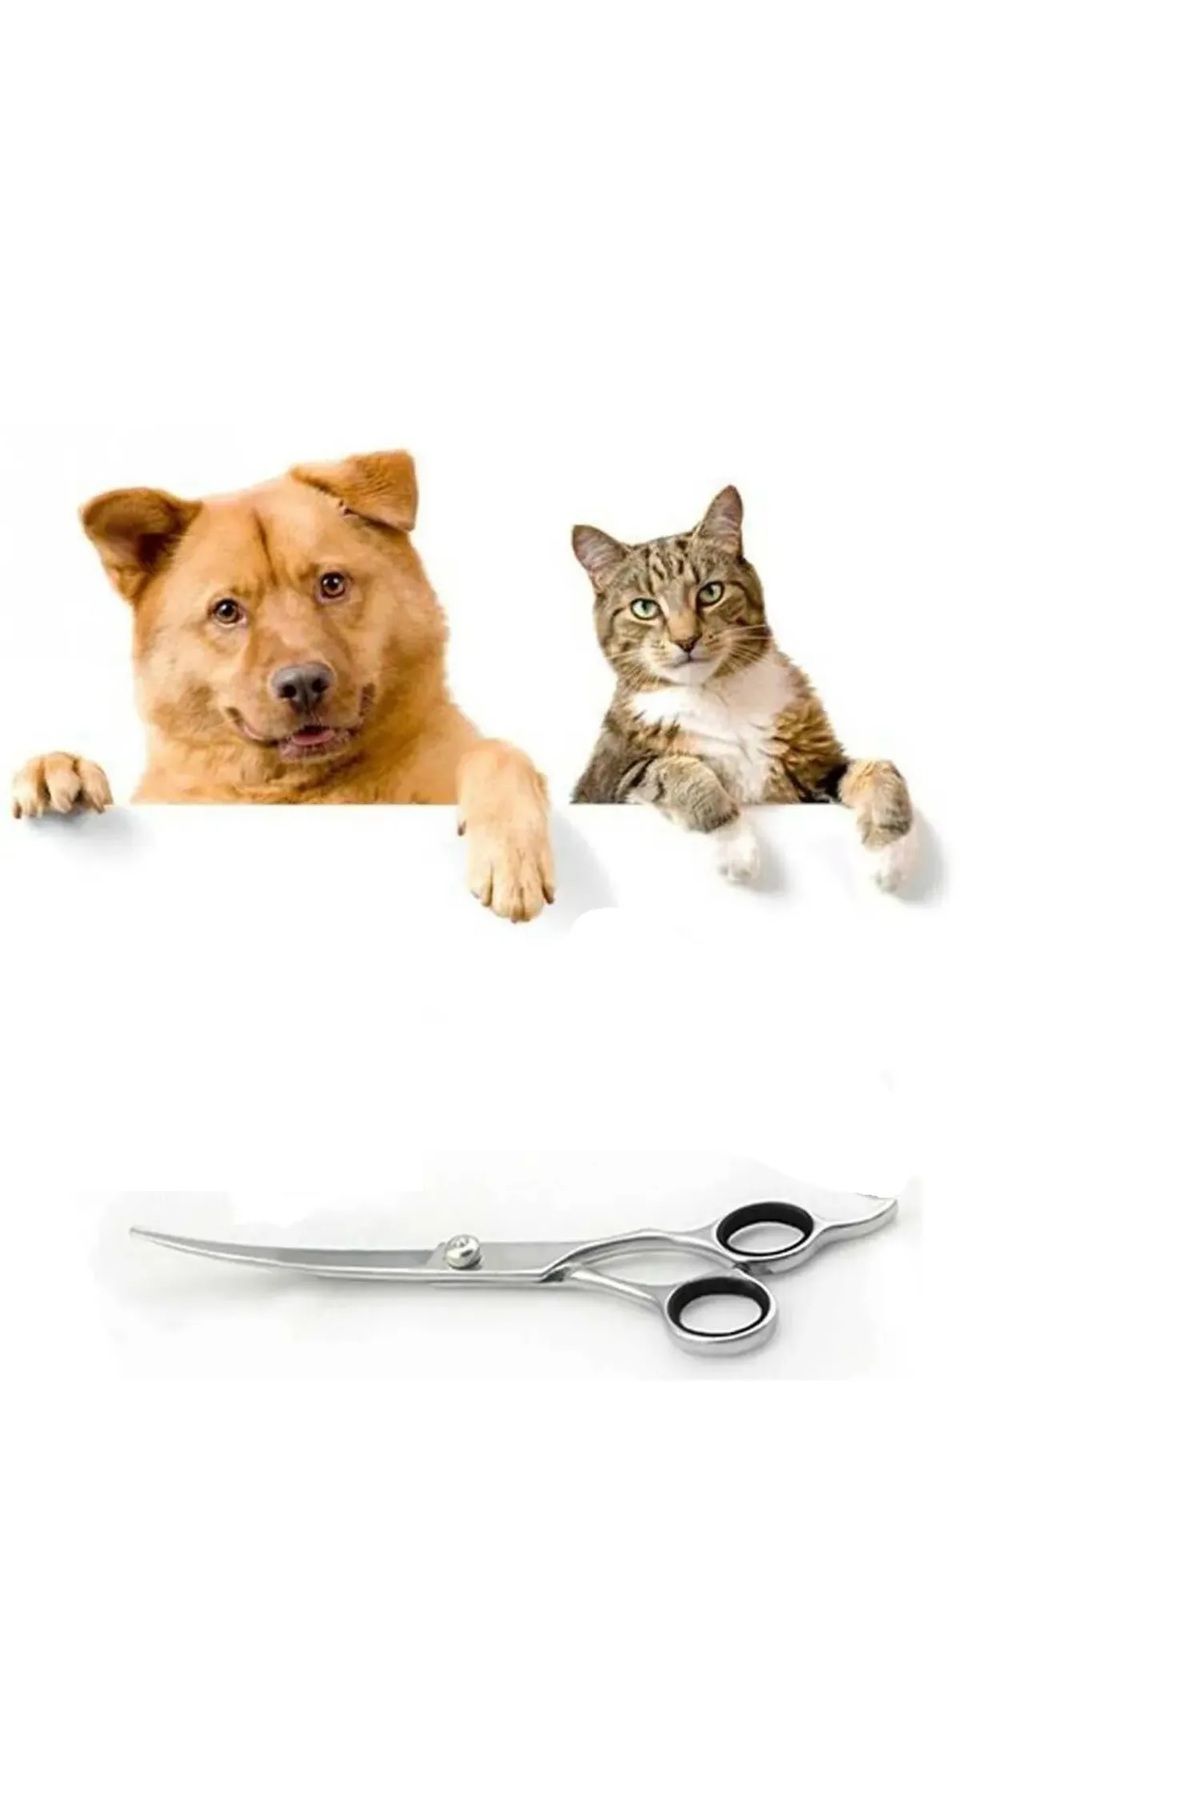 valkyrie Profesyonel Kavisli ( Oval) 7 inç Pet Kedi Köpek Evcil Hayvan Saç Tüy Kesme Şekil Verme Makası